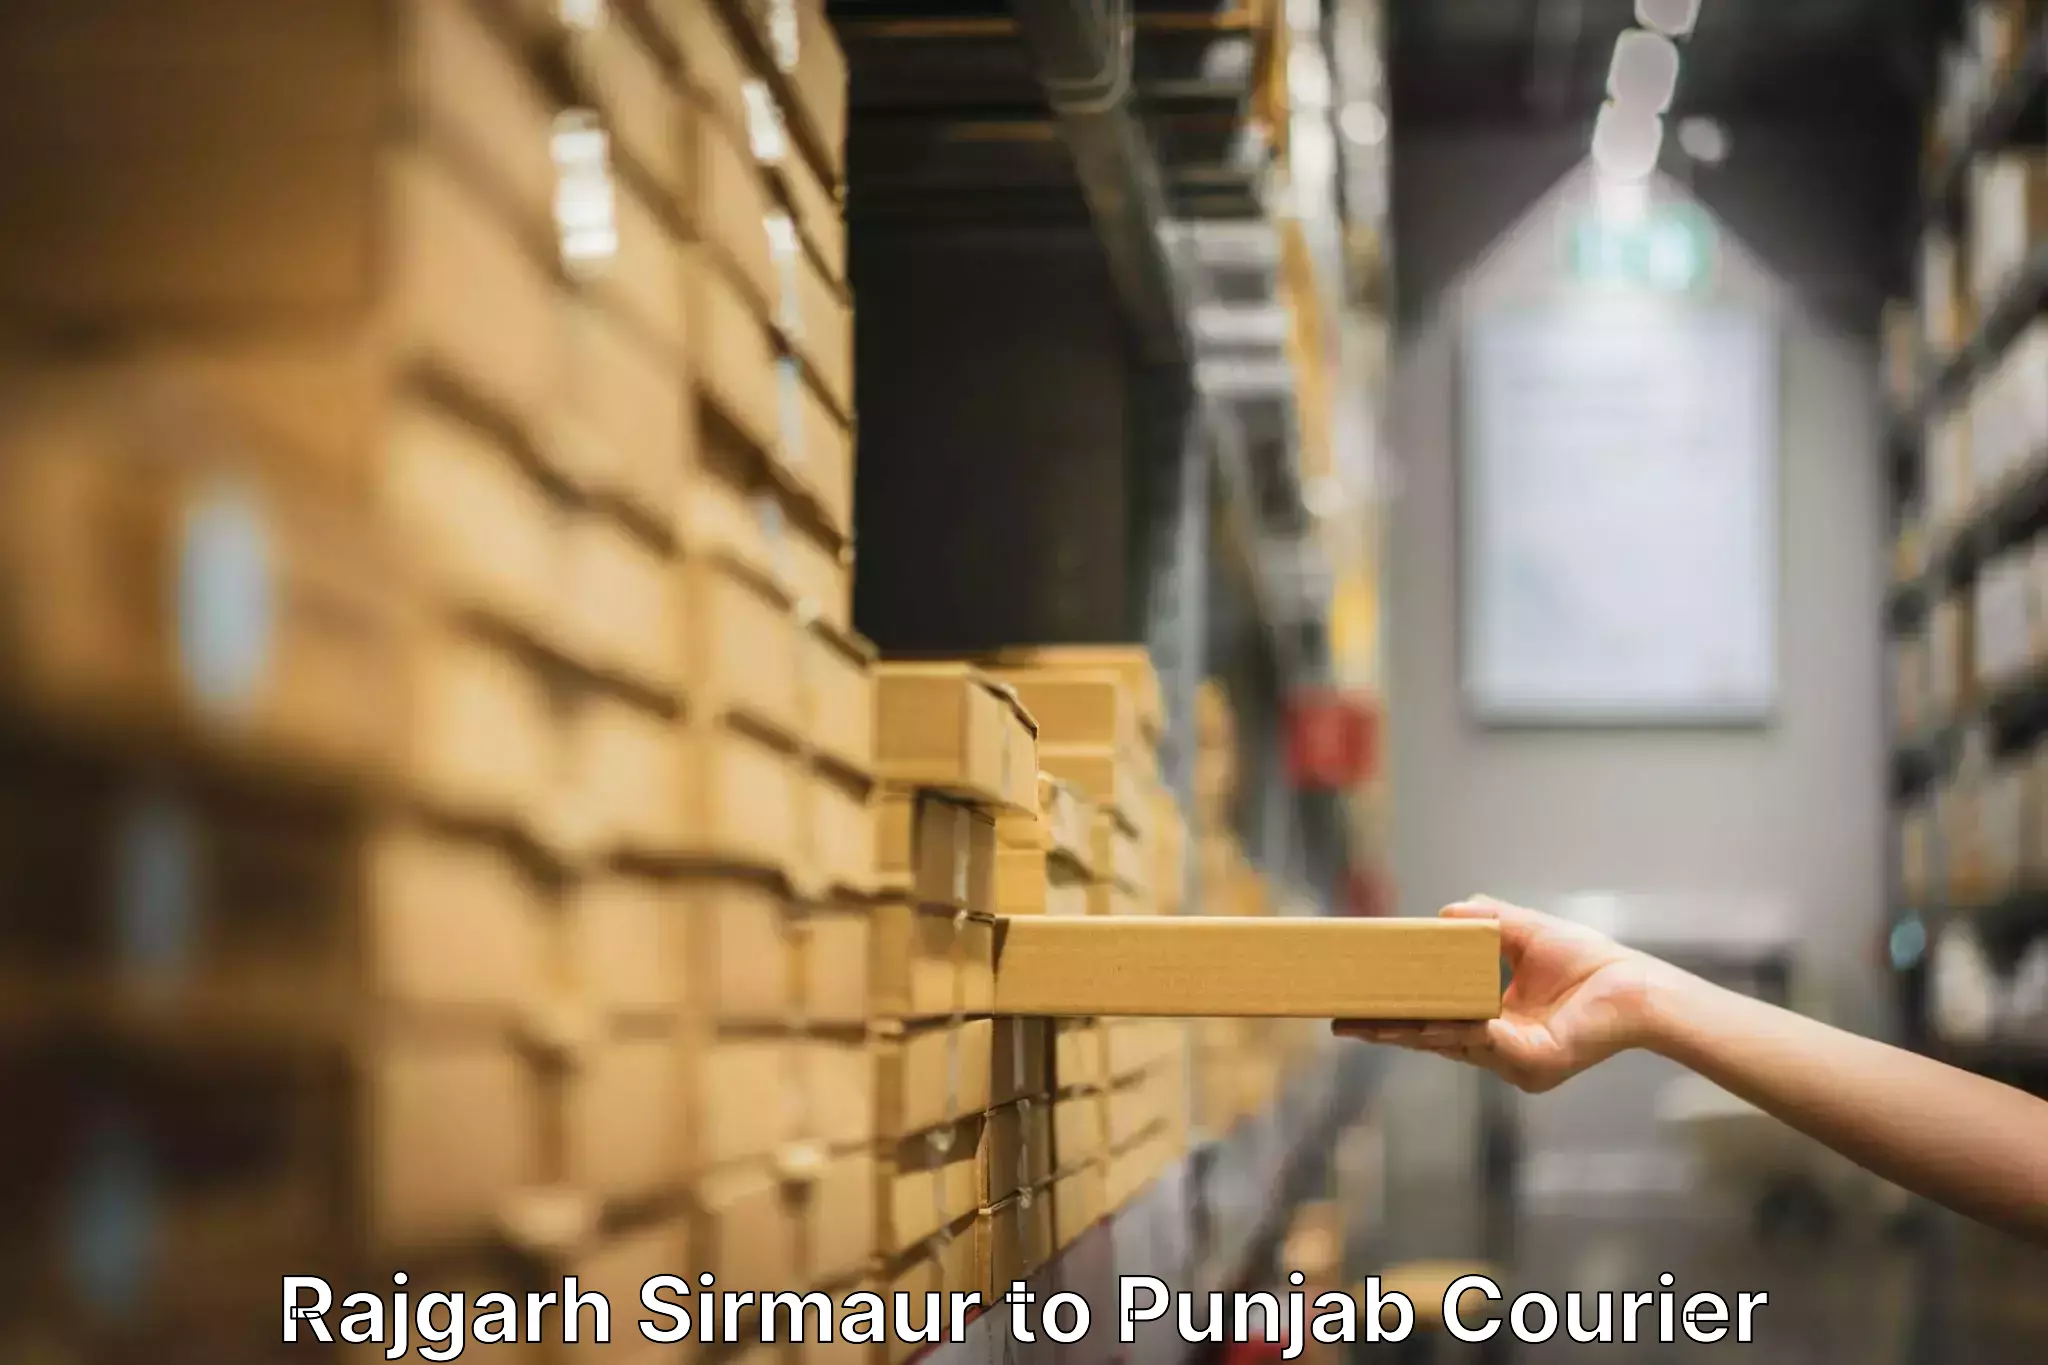 Trusted furniture movers Rajgarh Sirmaur to Anandpur Sahib